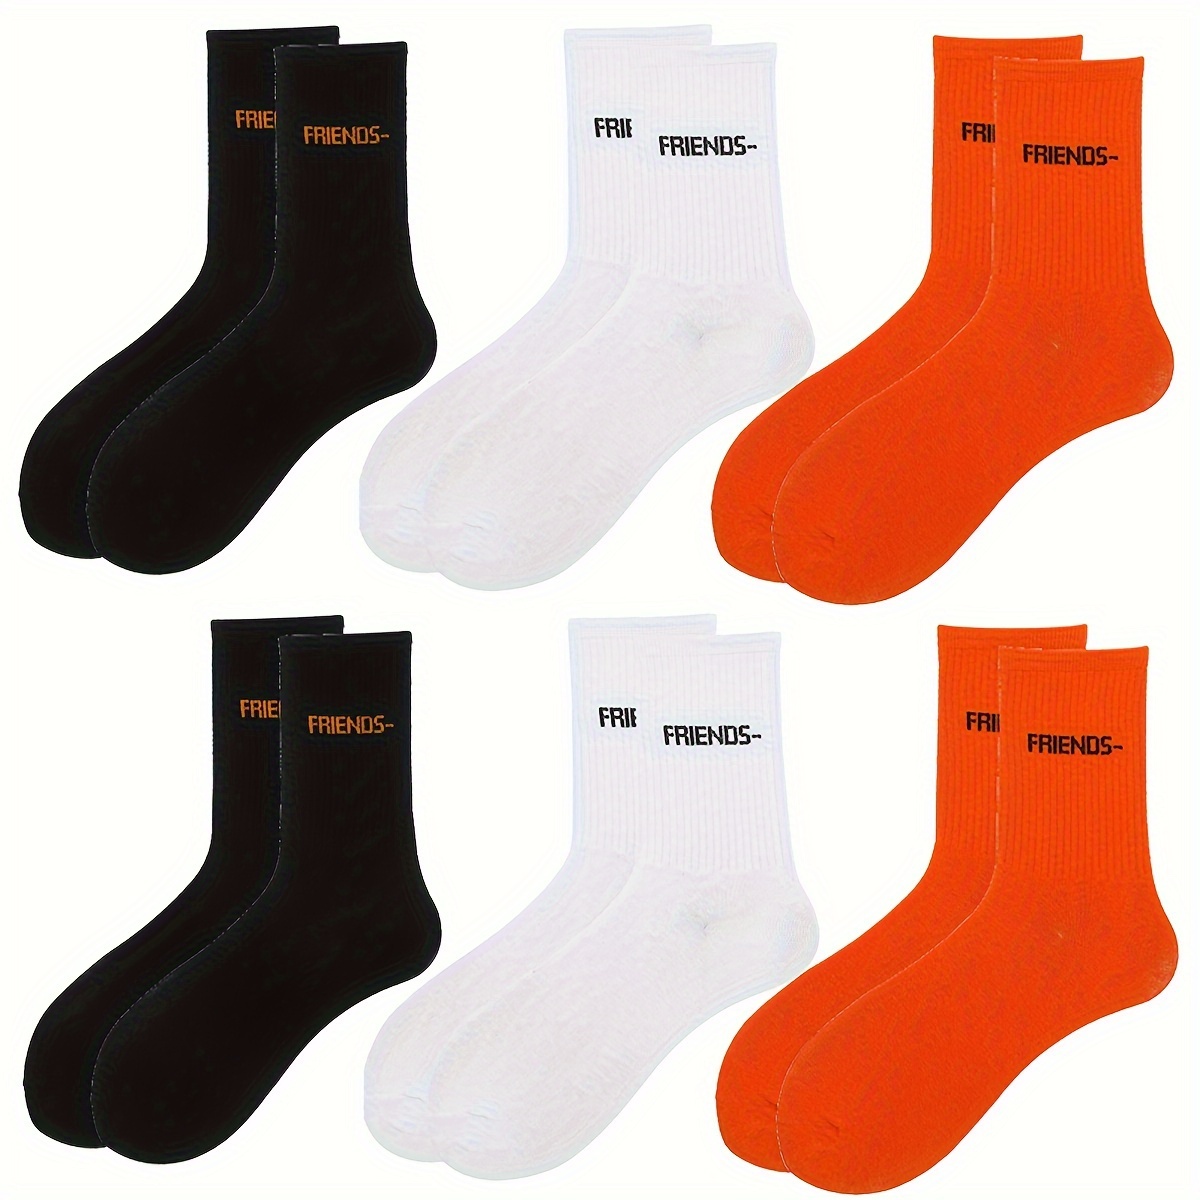 En calcetines del tubo, calcetines deportivos de baloncesto para hombres  calcetines deportivos para hombre calcetines de baloncesto para hombres  ultra sensibles